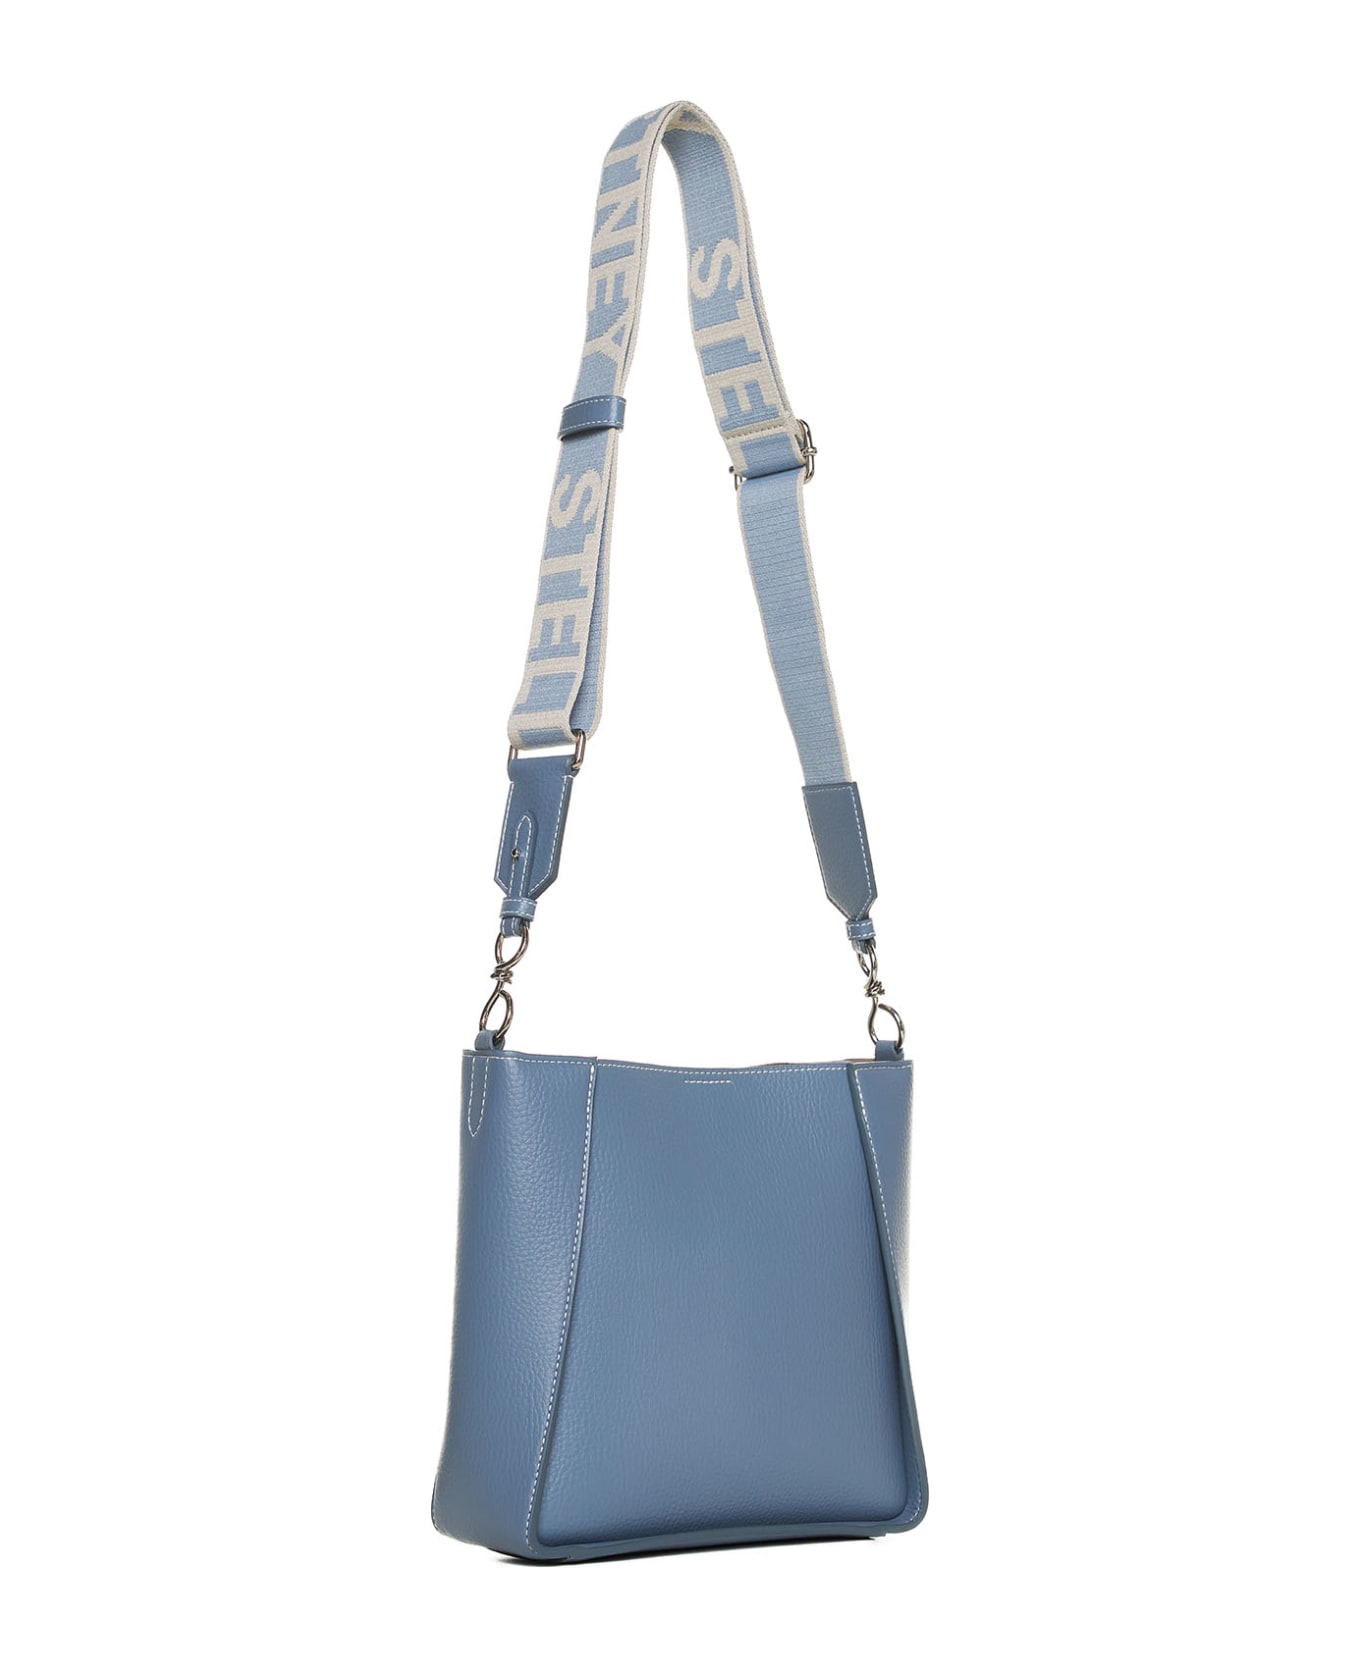 Stella McCartney Shoulder Bag - Blue grey